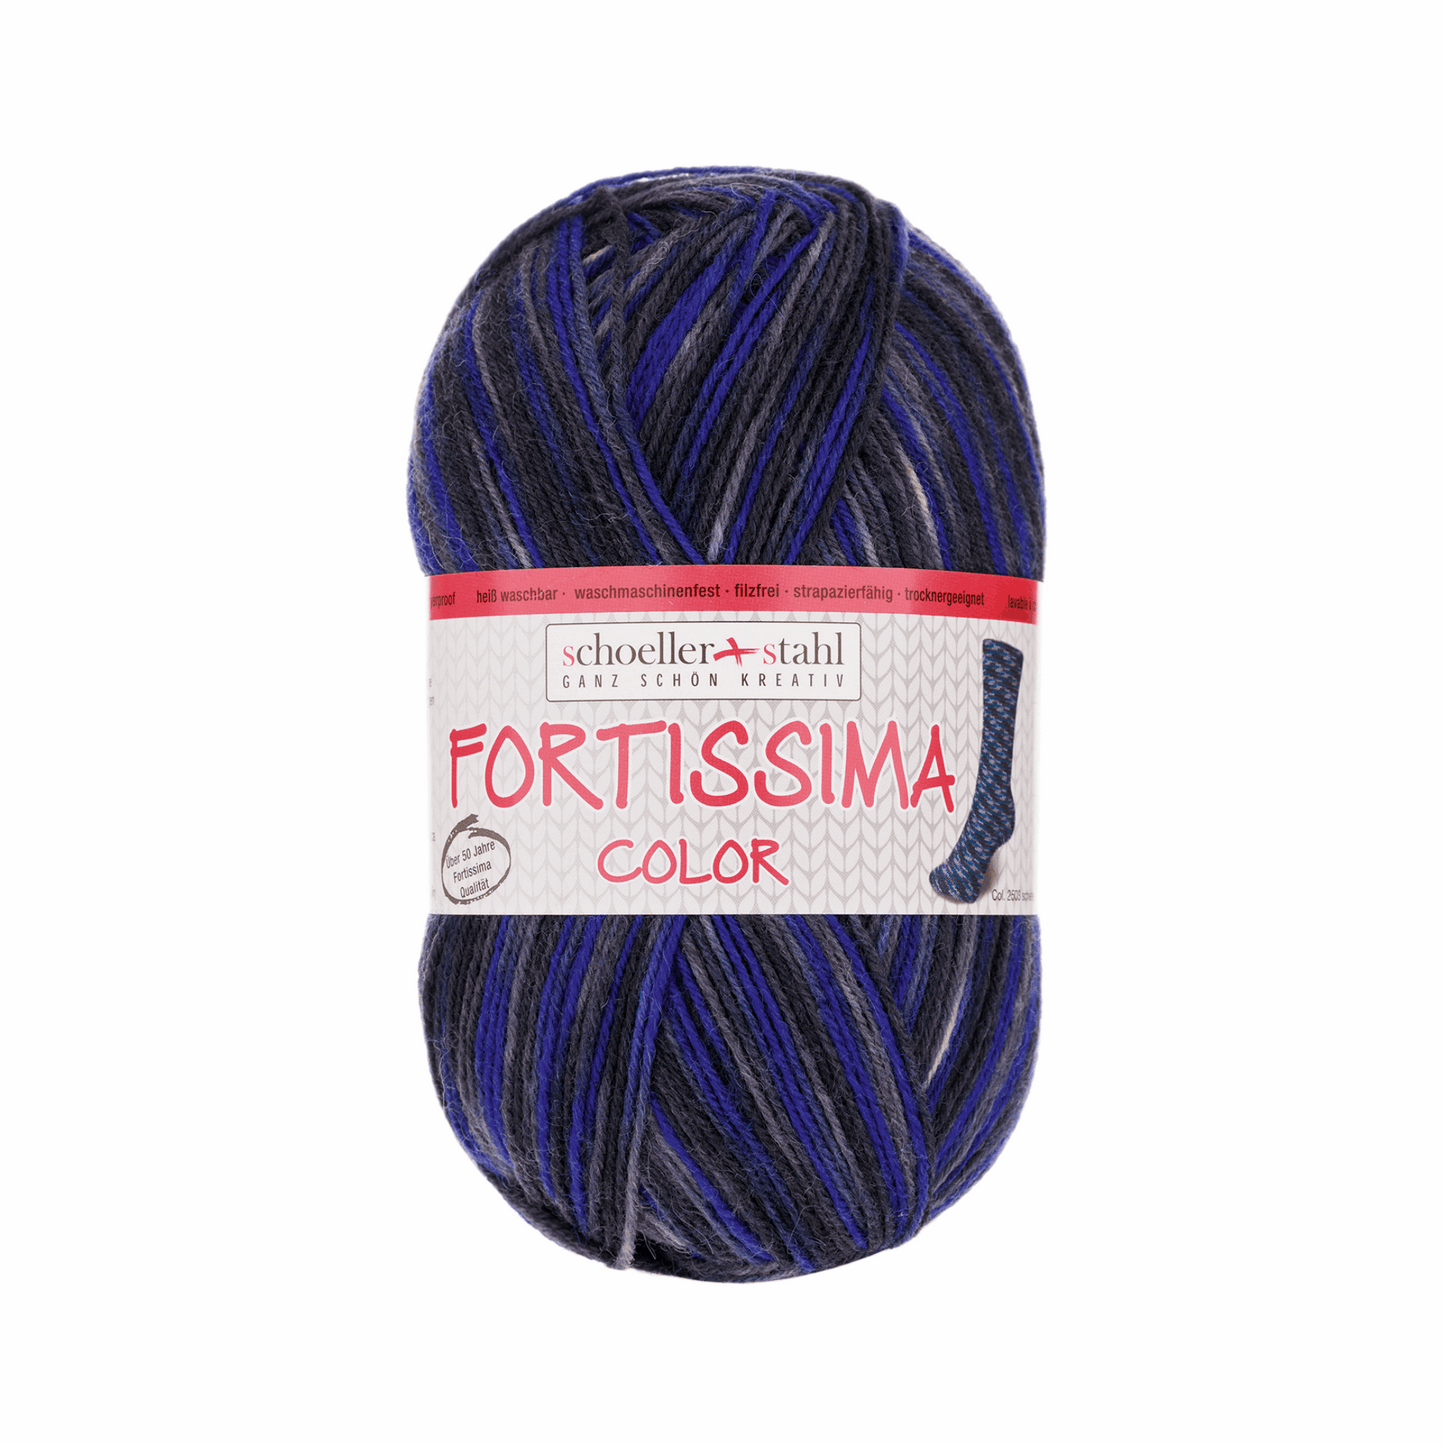 Fortissima socka 4fädig, 90028, Farbe 2503, schiefer